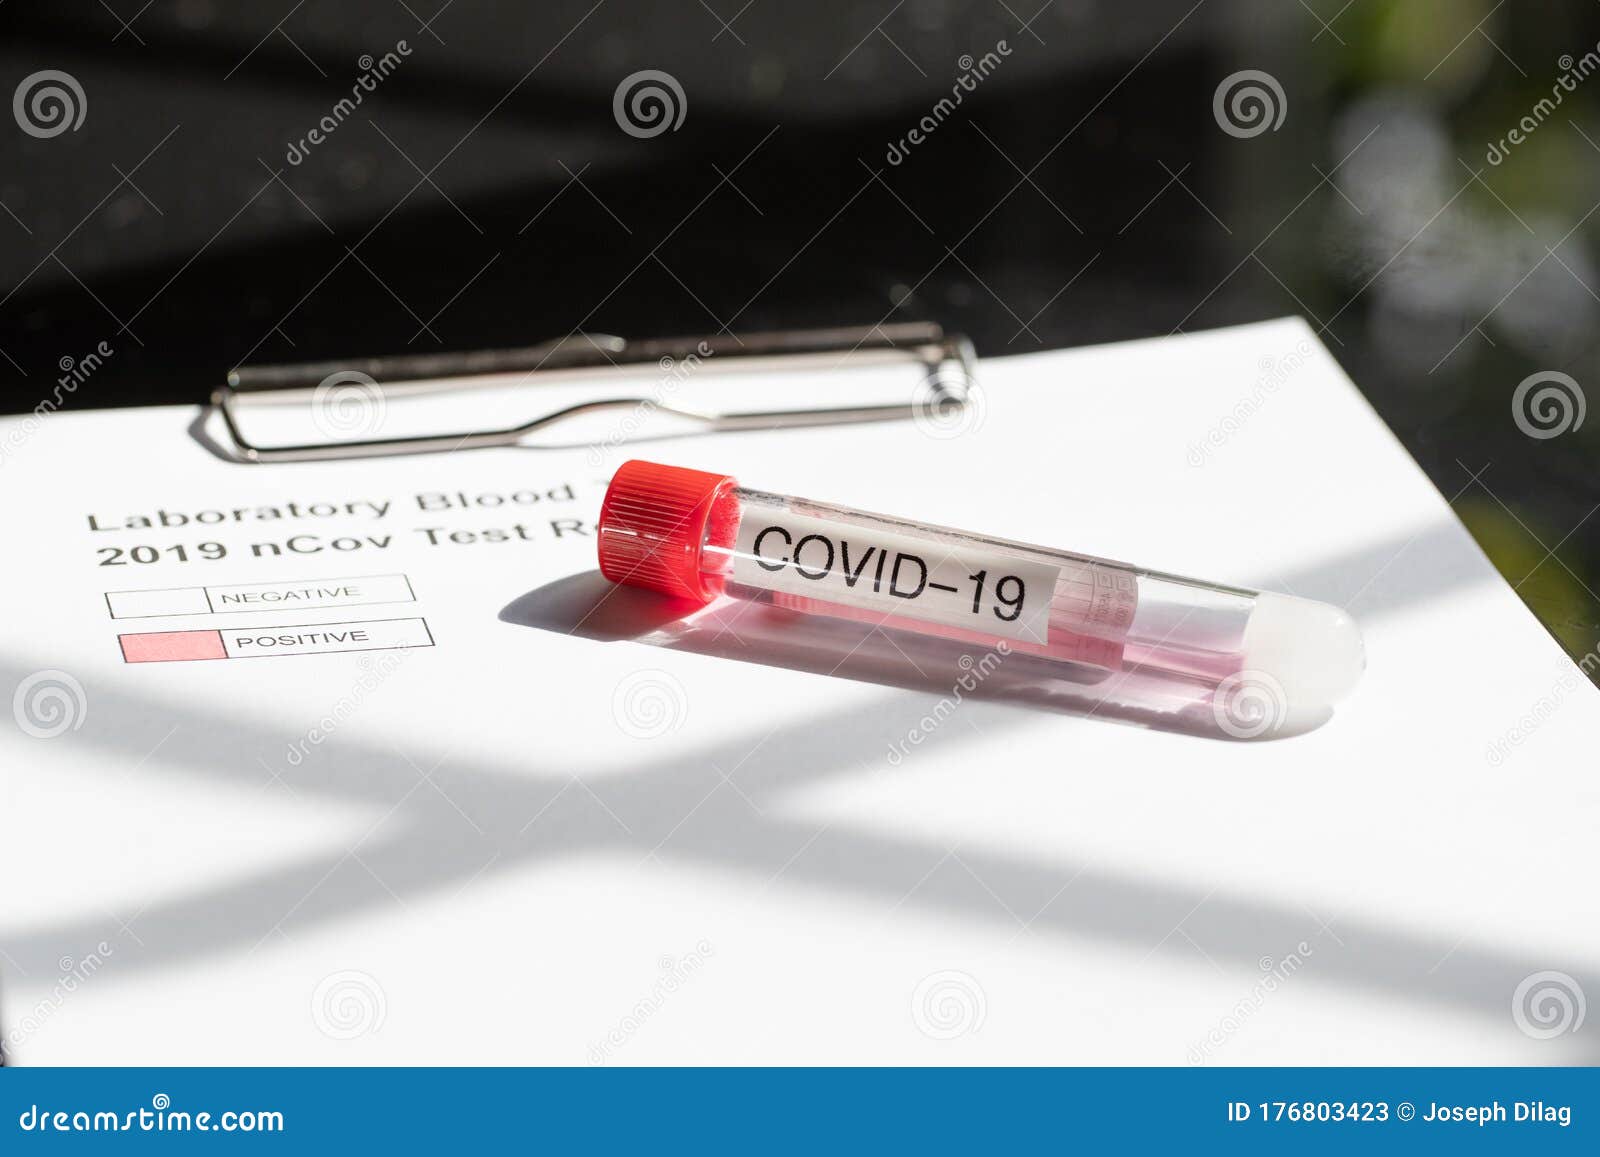 testing kit for ncov, covid - 19, corona virus testing tube in laboratory